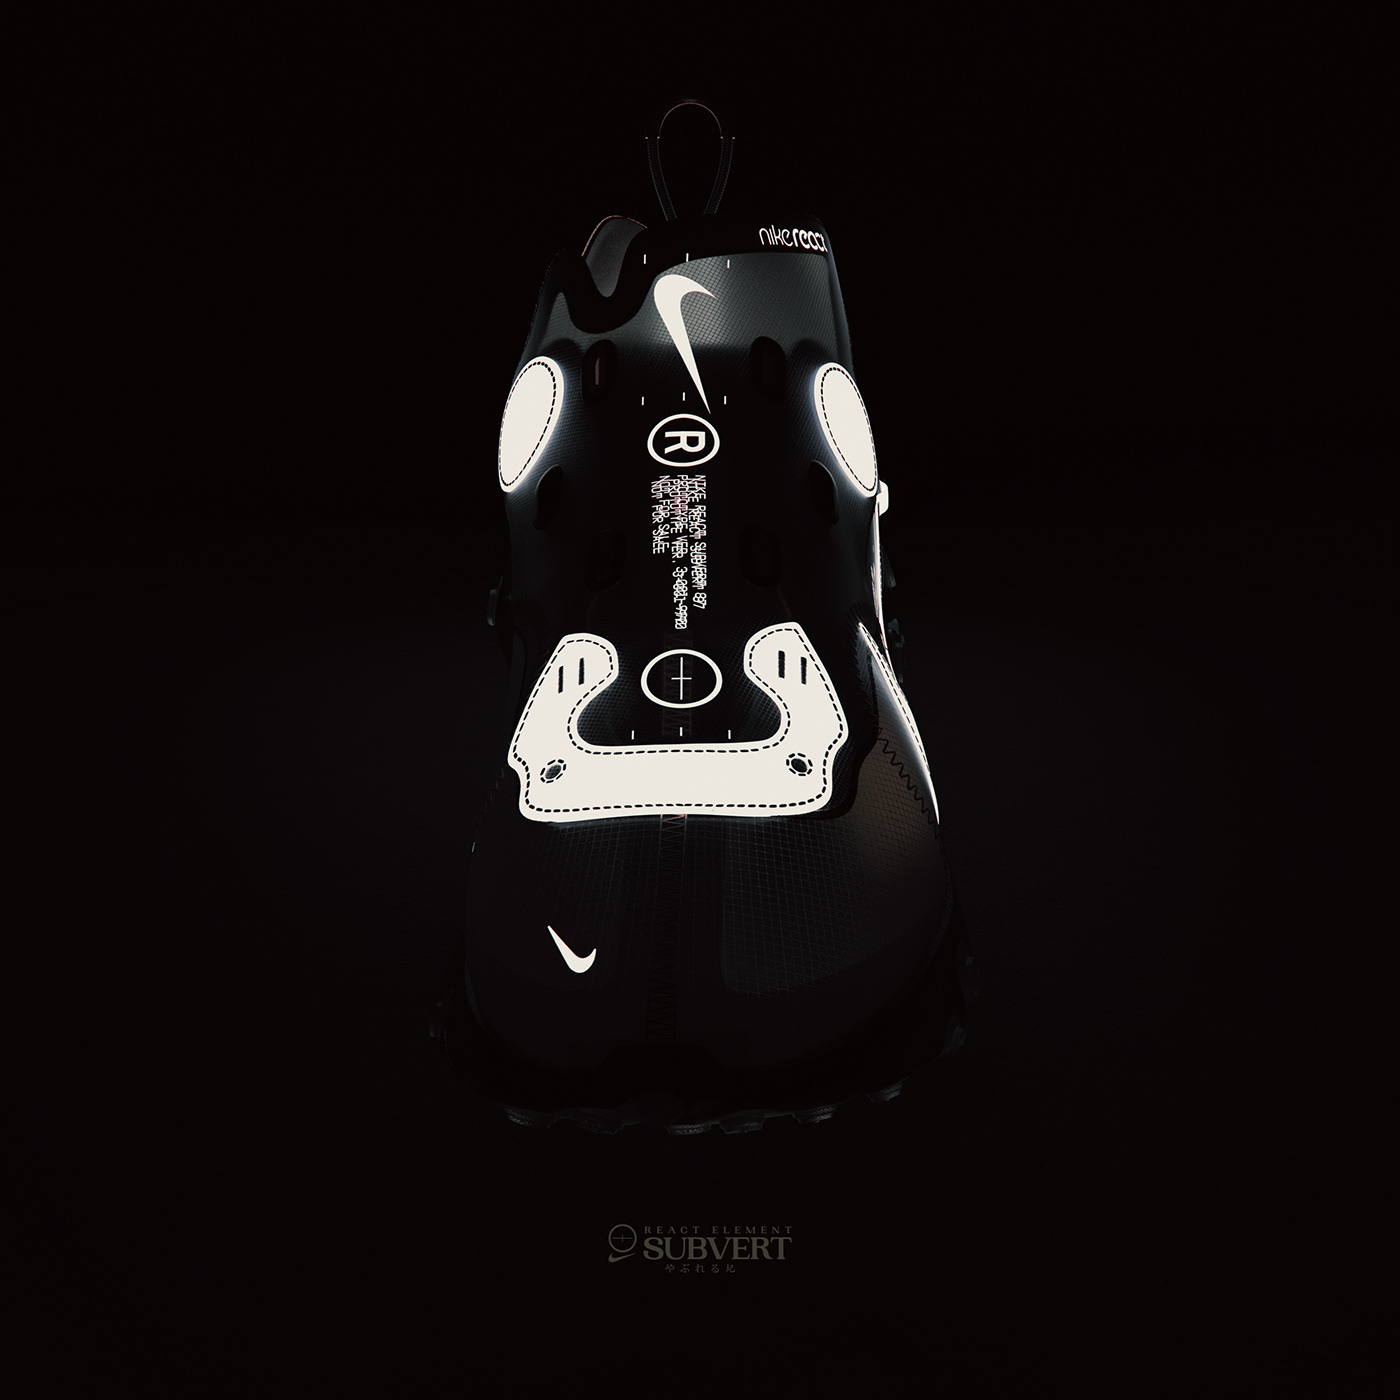 Nike footwear shoe industrial design  rendering product render Fashion  sneaker 3D Cyberpunk